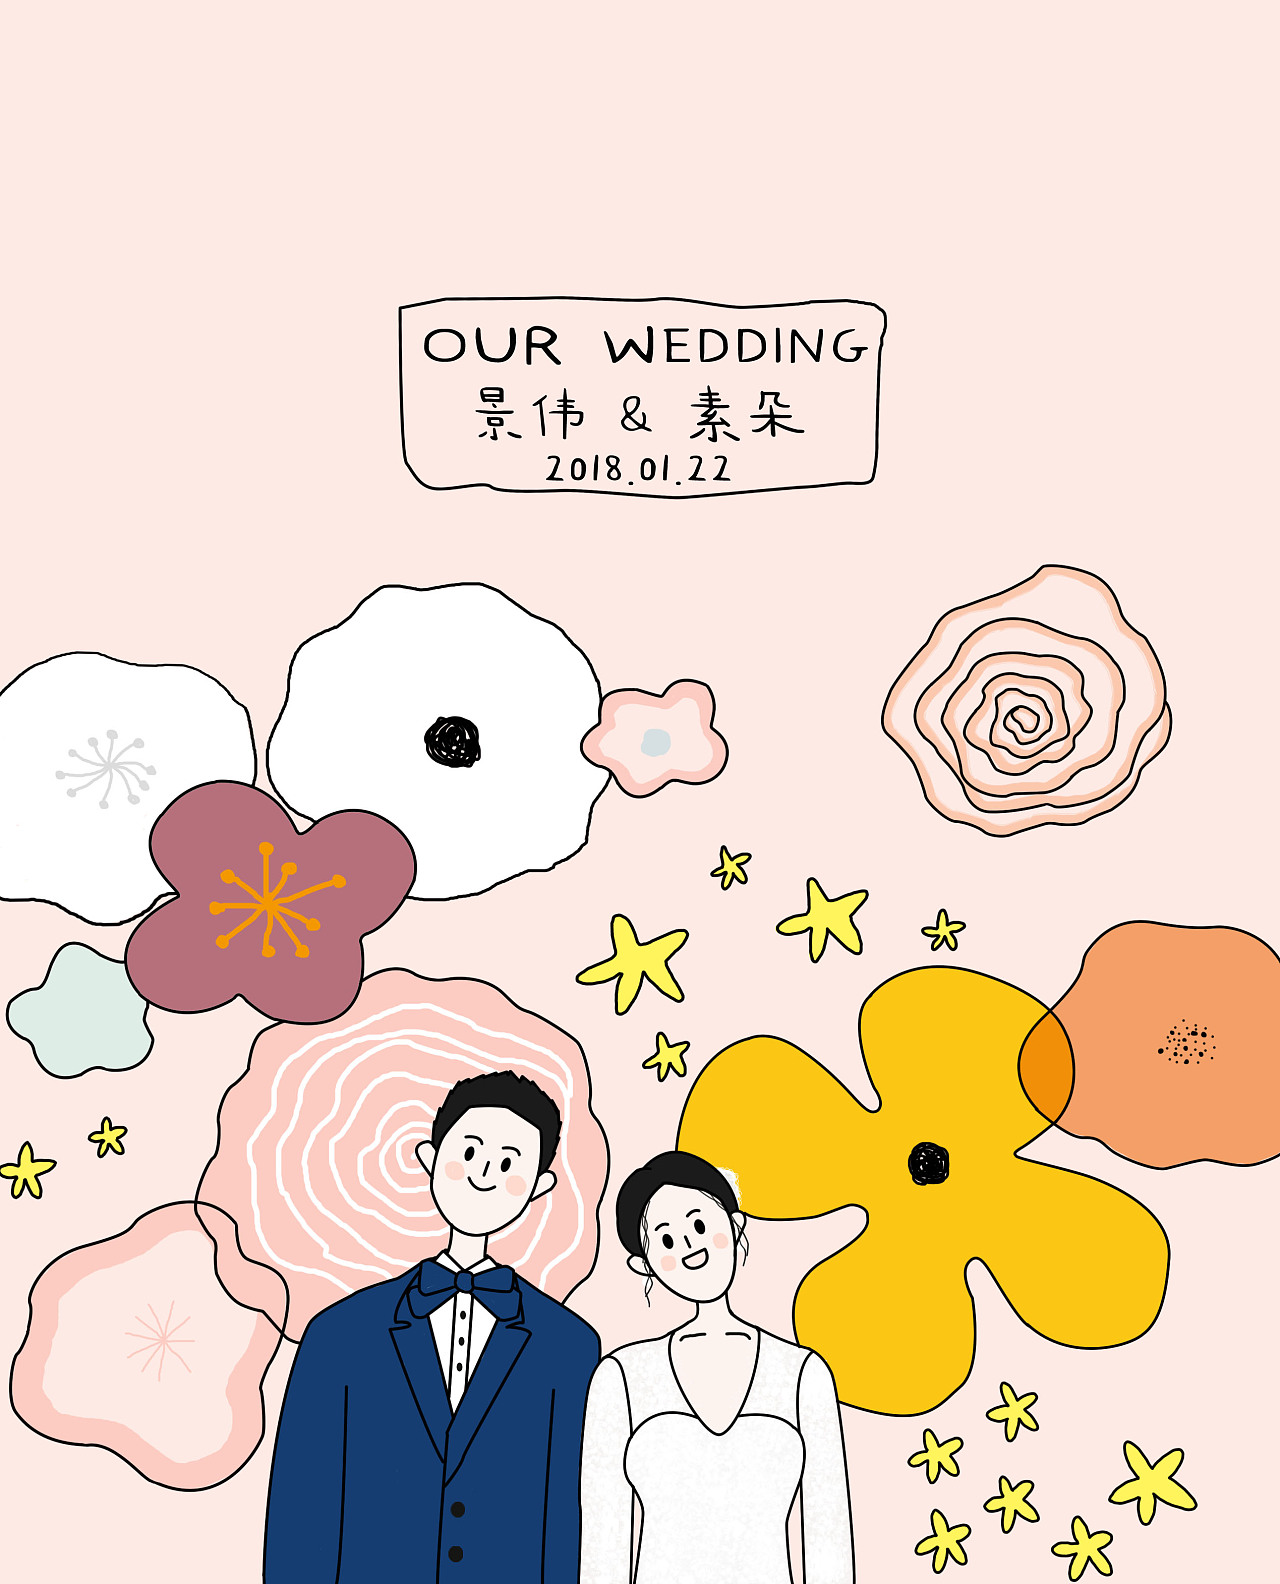 关于结婚纪念日文案 | 纪念日九宫格 - 知乎